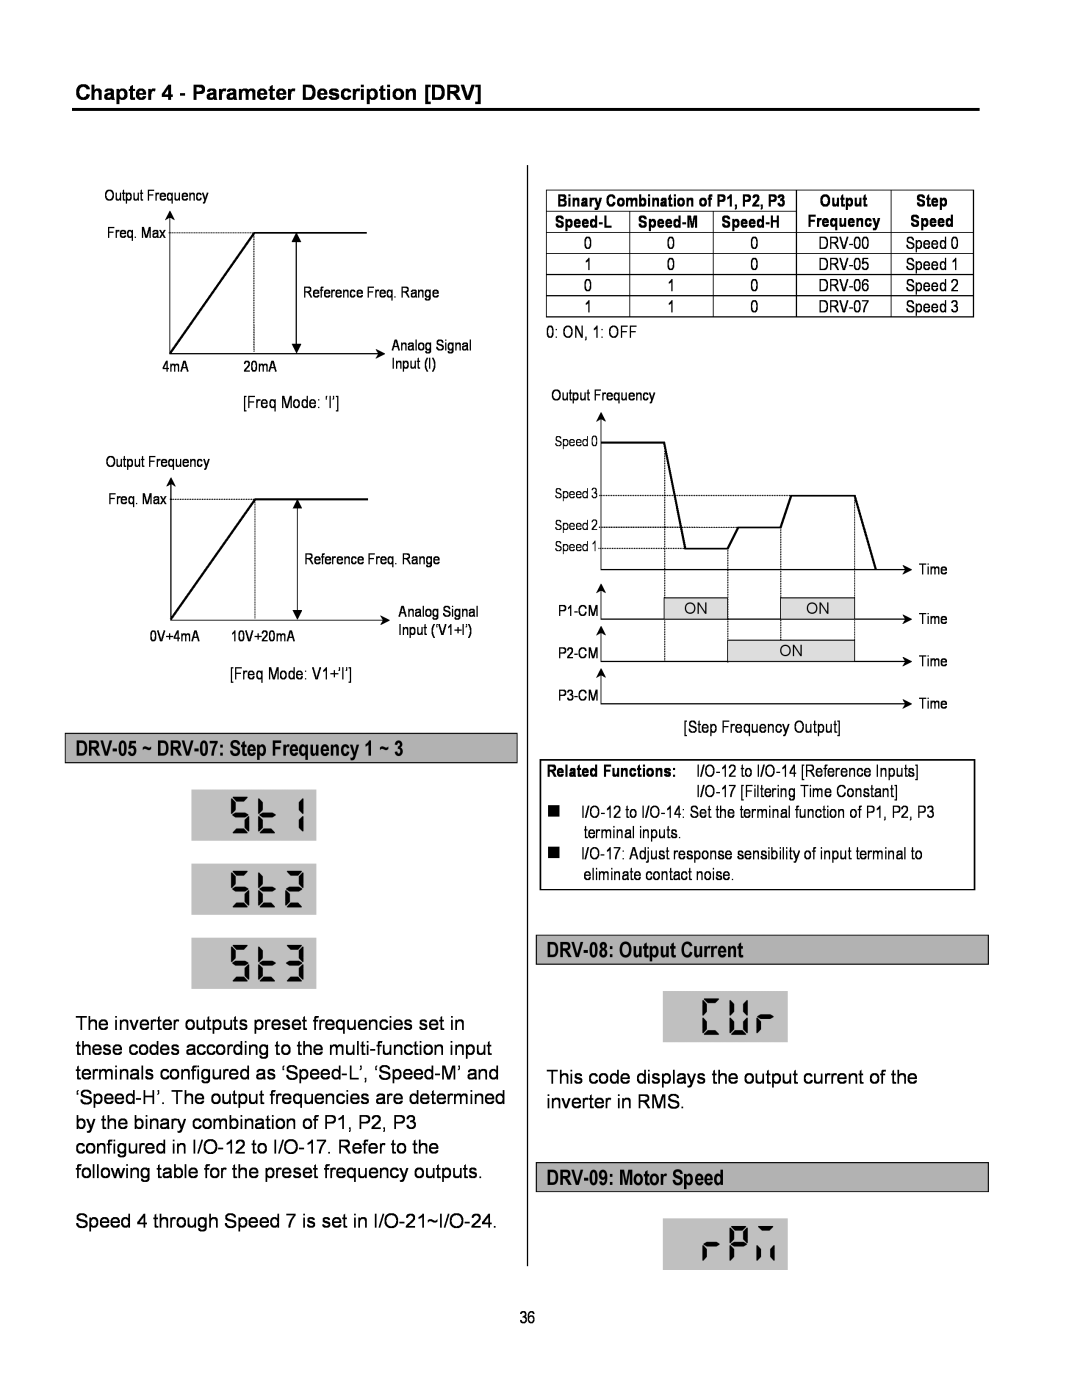 Cleveland Range inverter manual Parameter Description DRV, DRV-05~ DRV-07 Step Frequency 1 ~, DRV-08 Output Current 